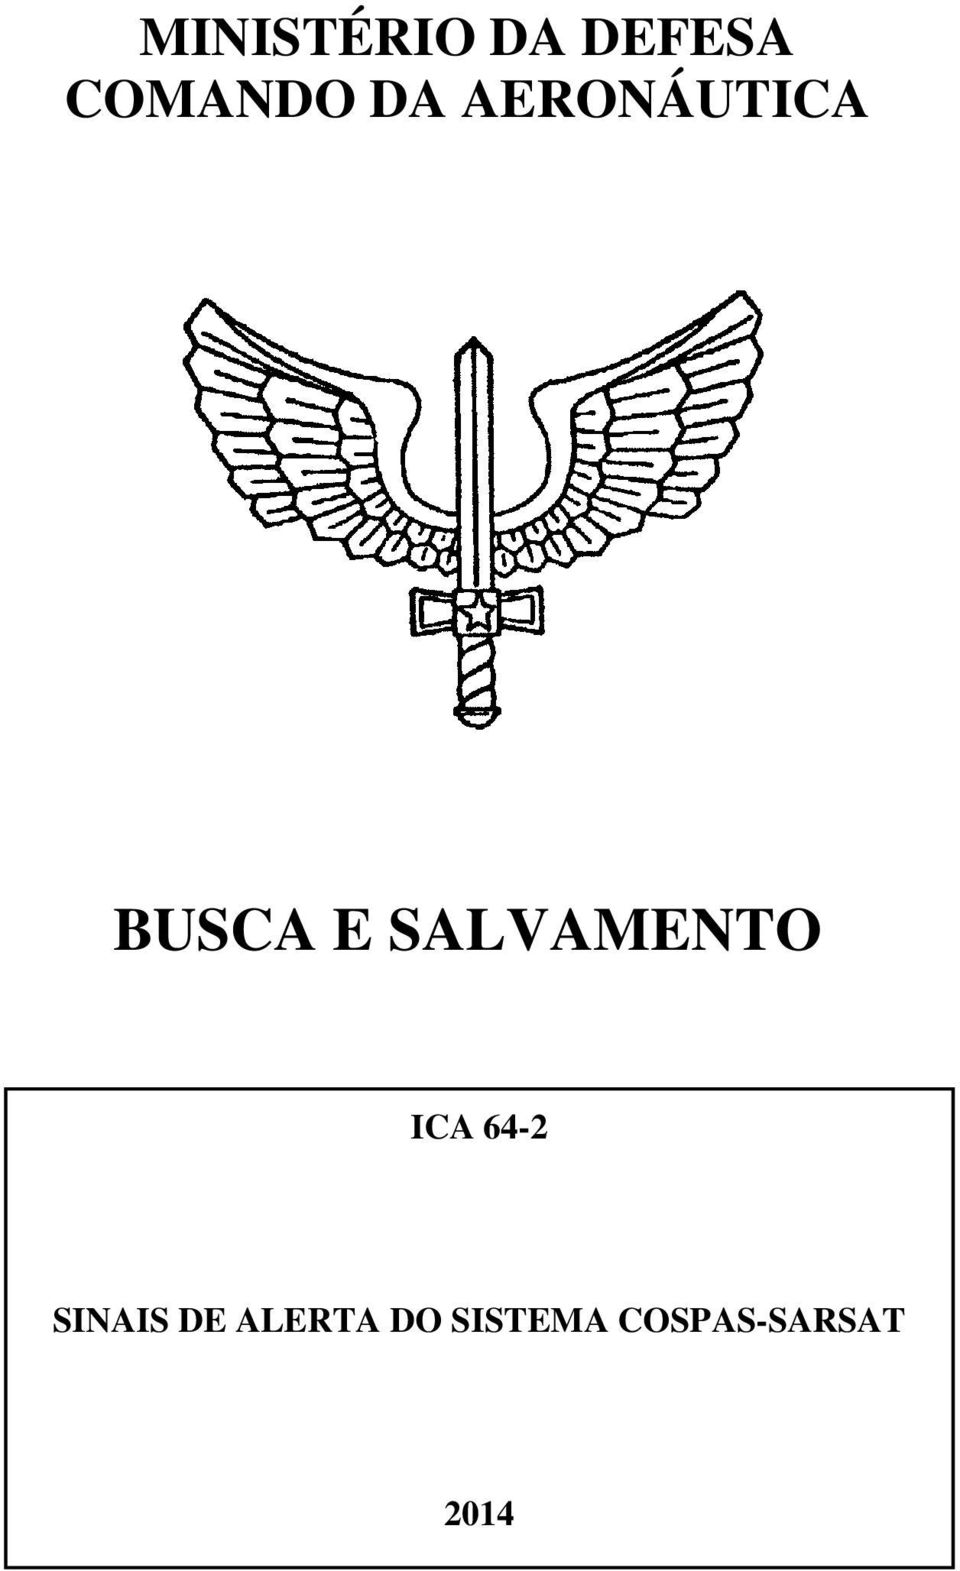 SALVAMENTO ICA 64-2 SINAIS DE